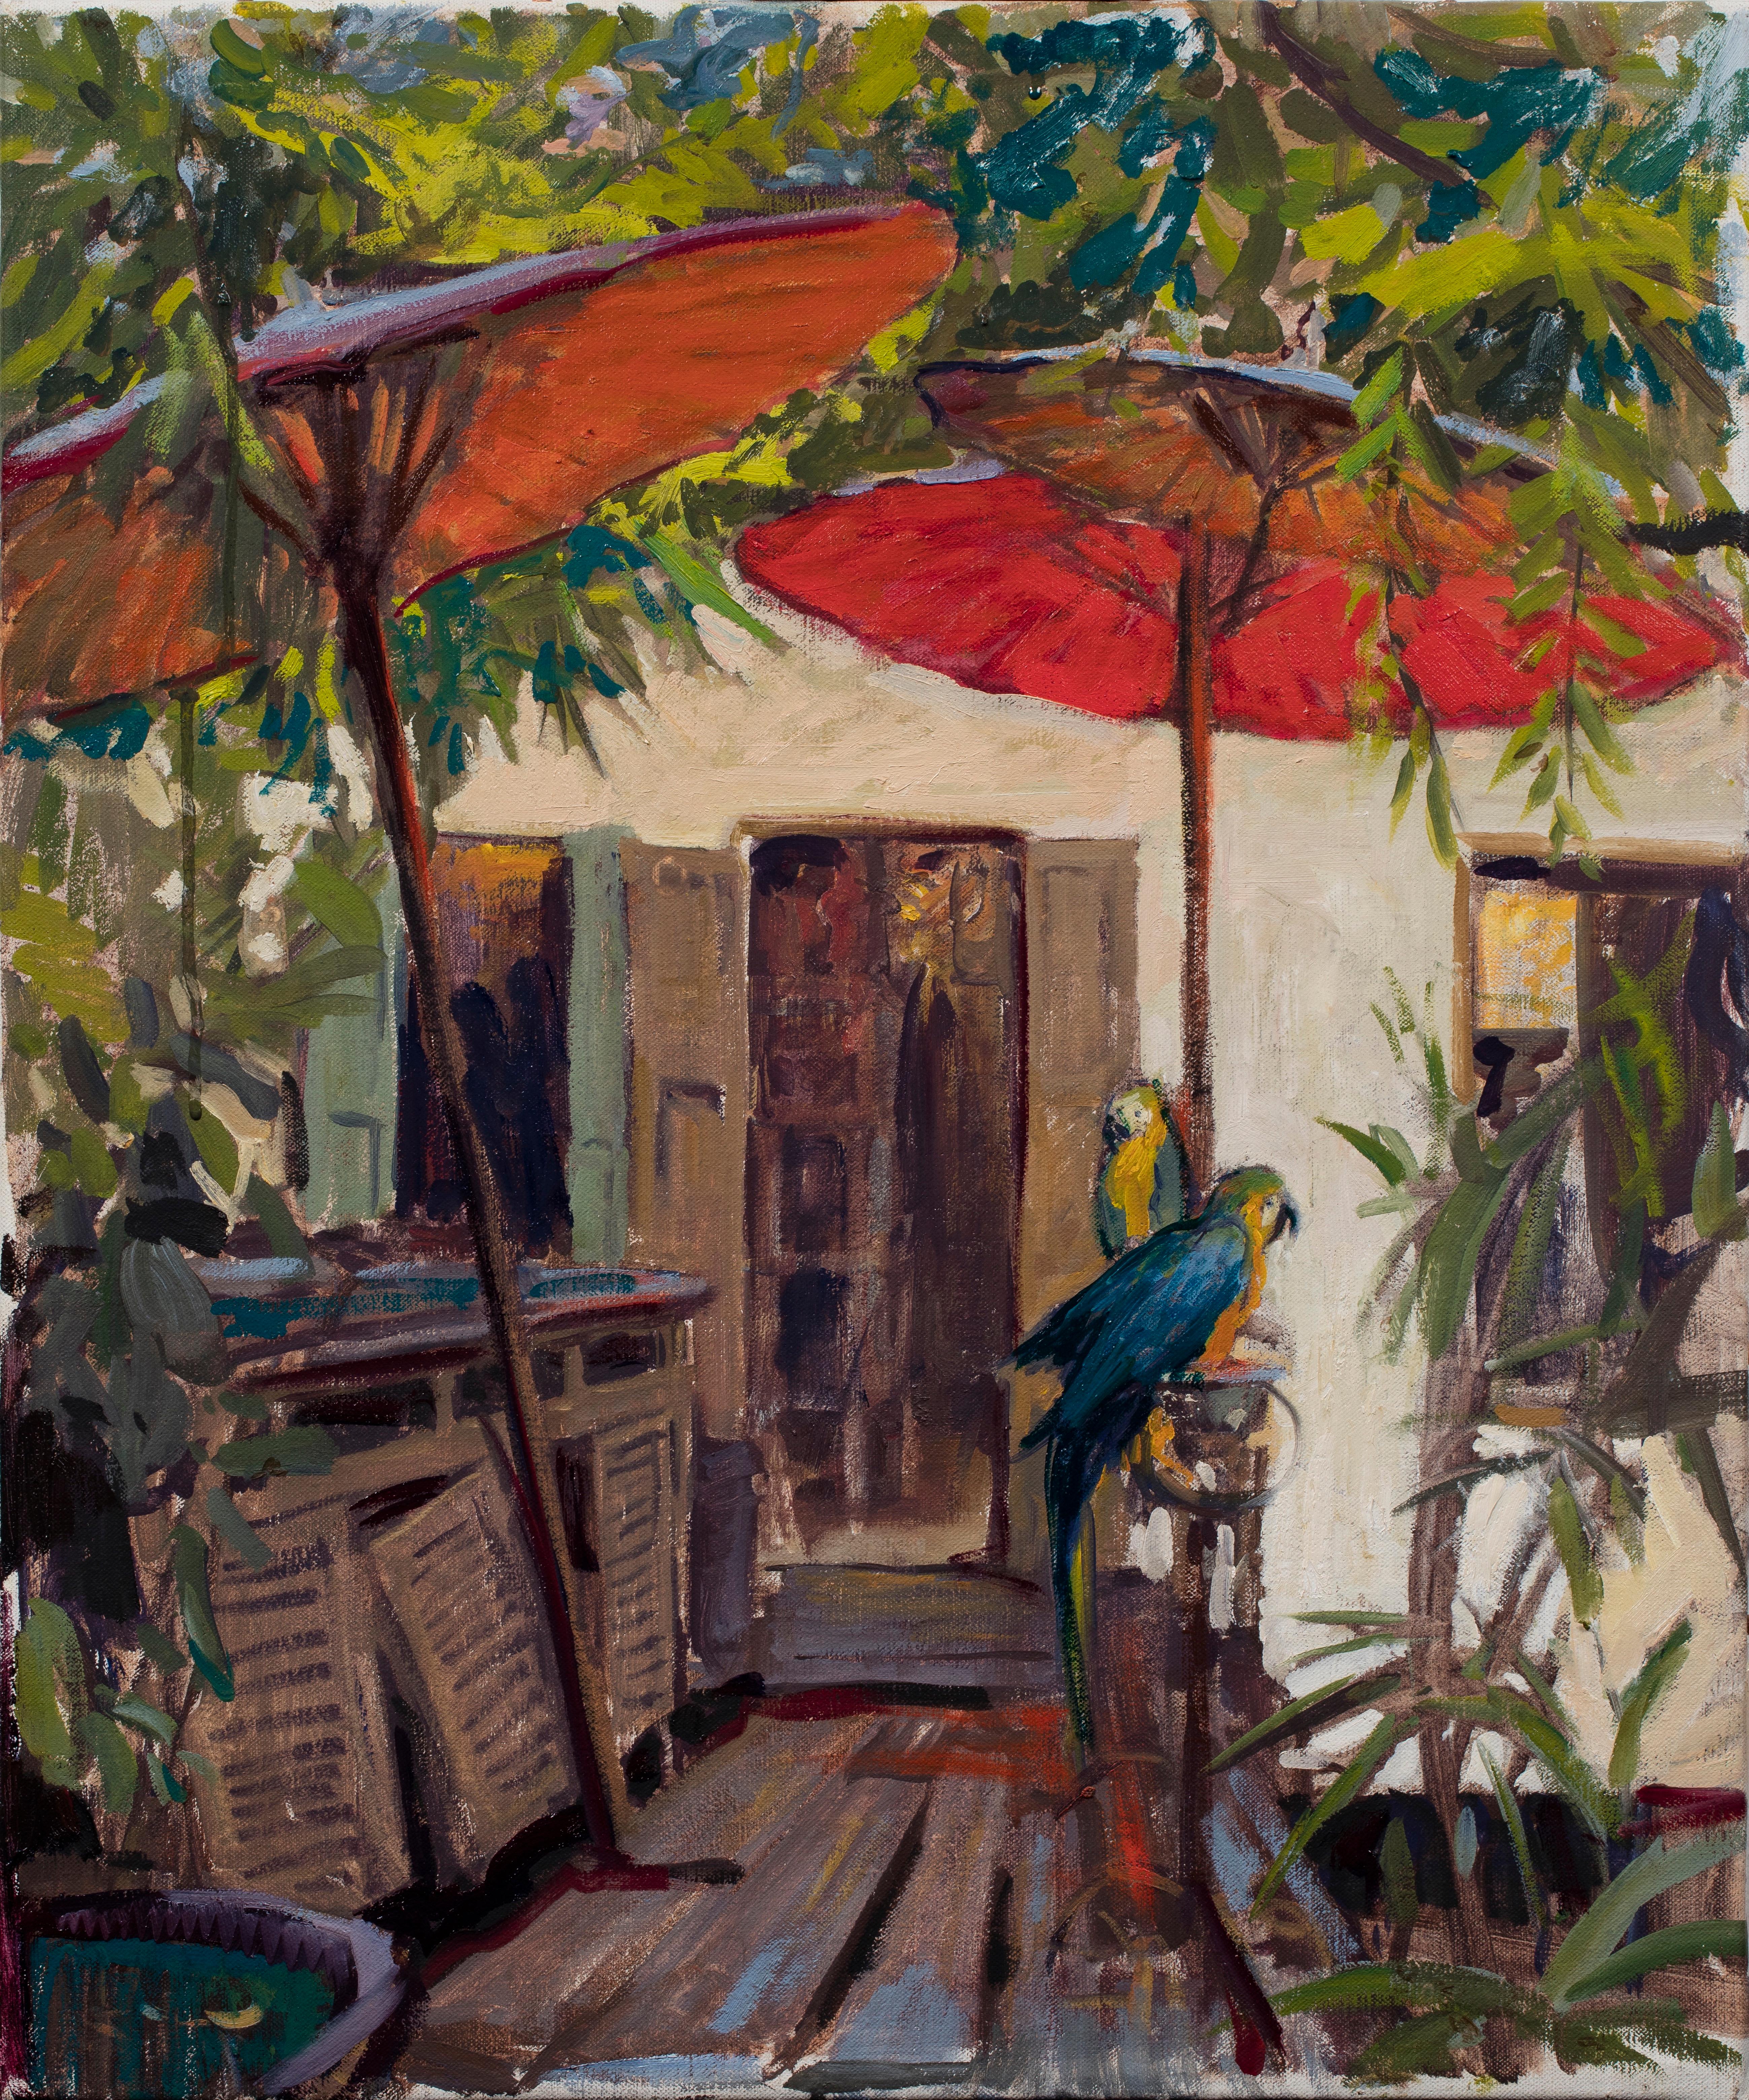 Still-Life Painting Daniela Astone - "Entrée de maison en Thaïlande" peinture réaliste classique rouge et verte de perroquets